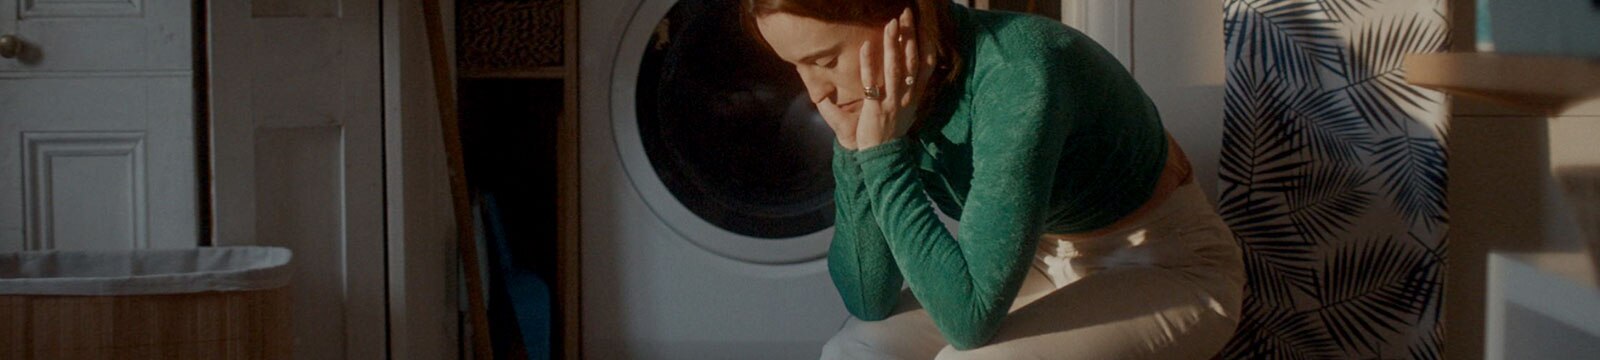 Wyczerpana kobieta siedzi samotnie w pralni.